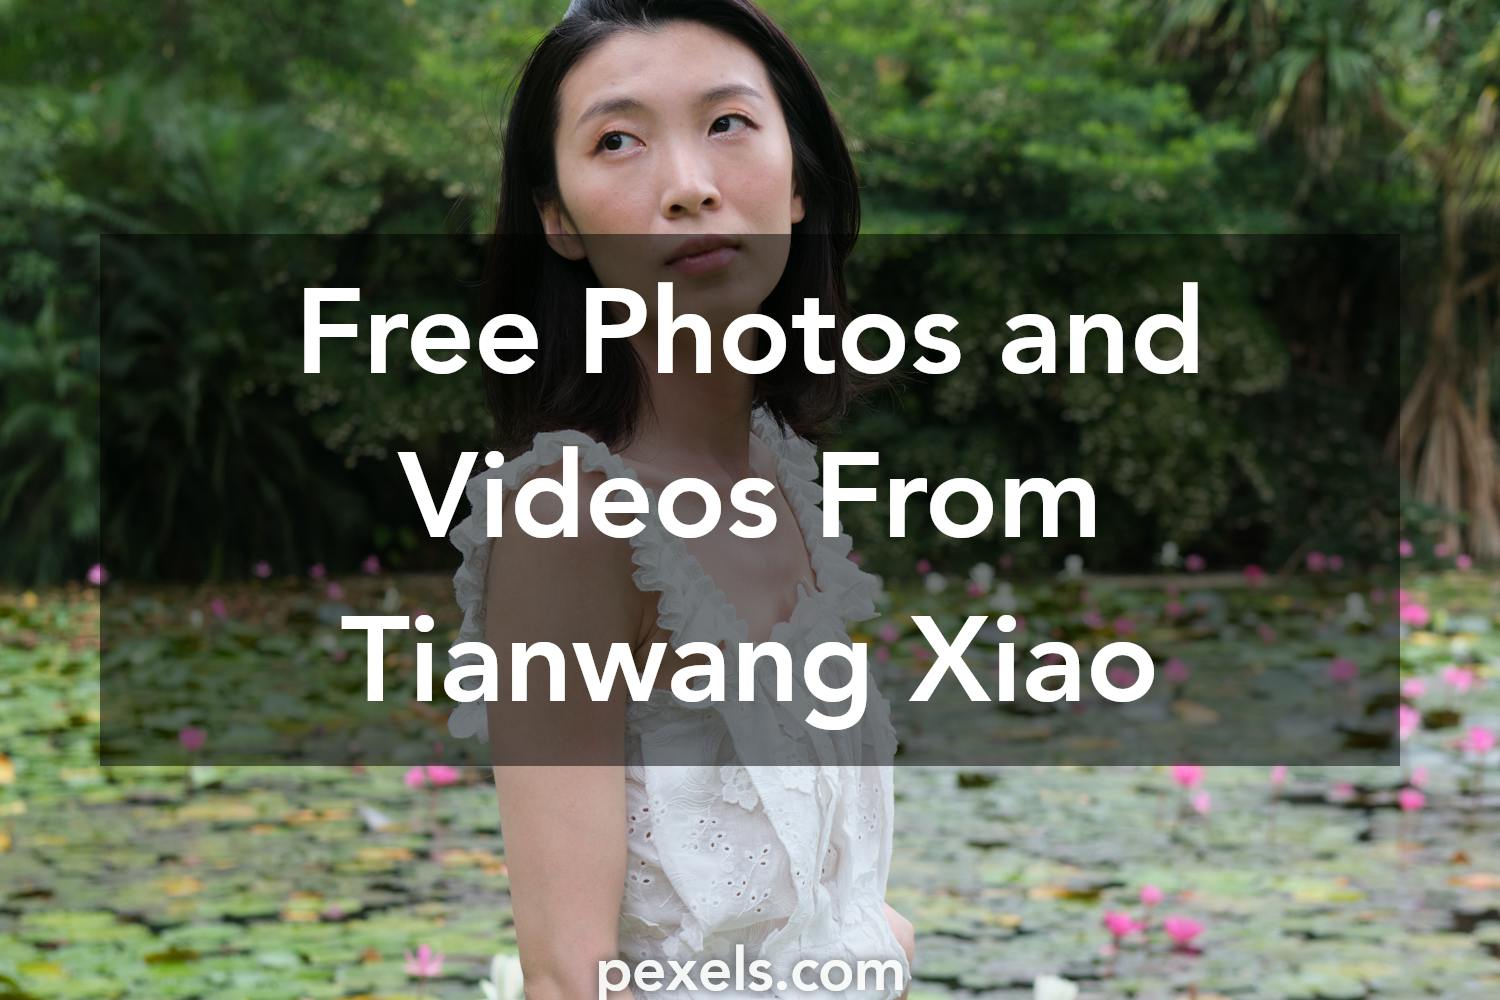 Tianwang Xiao - Photography